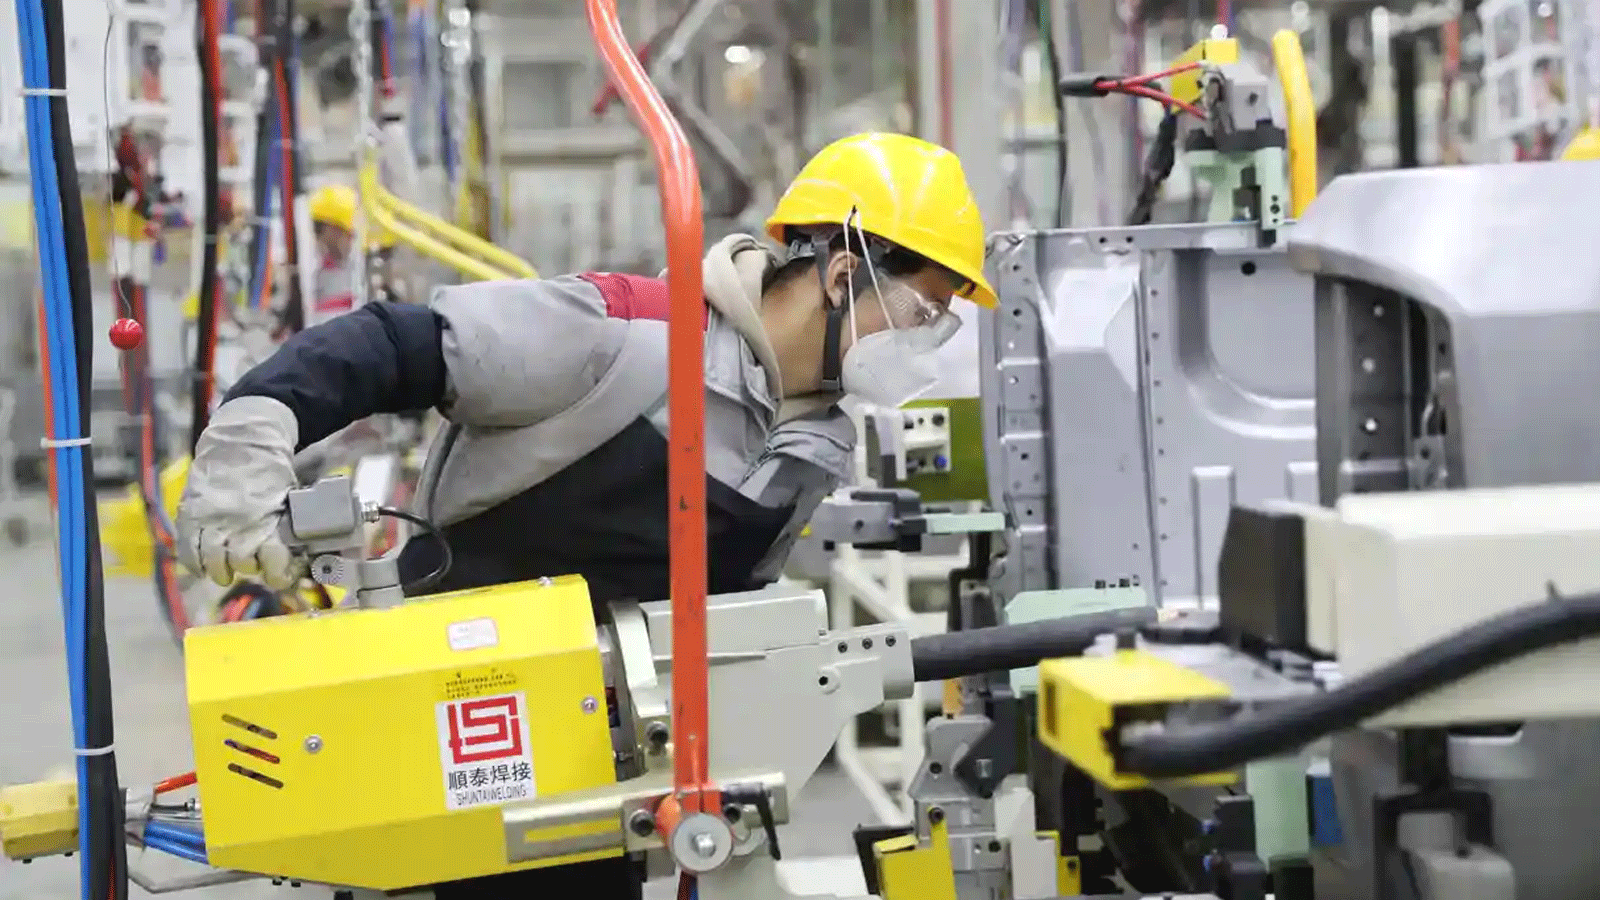 أحد العمال يتابع عمله في مصنع صيني